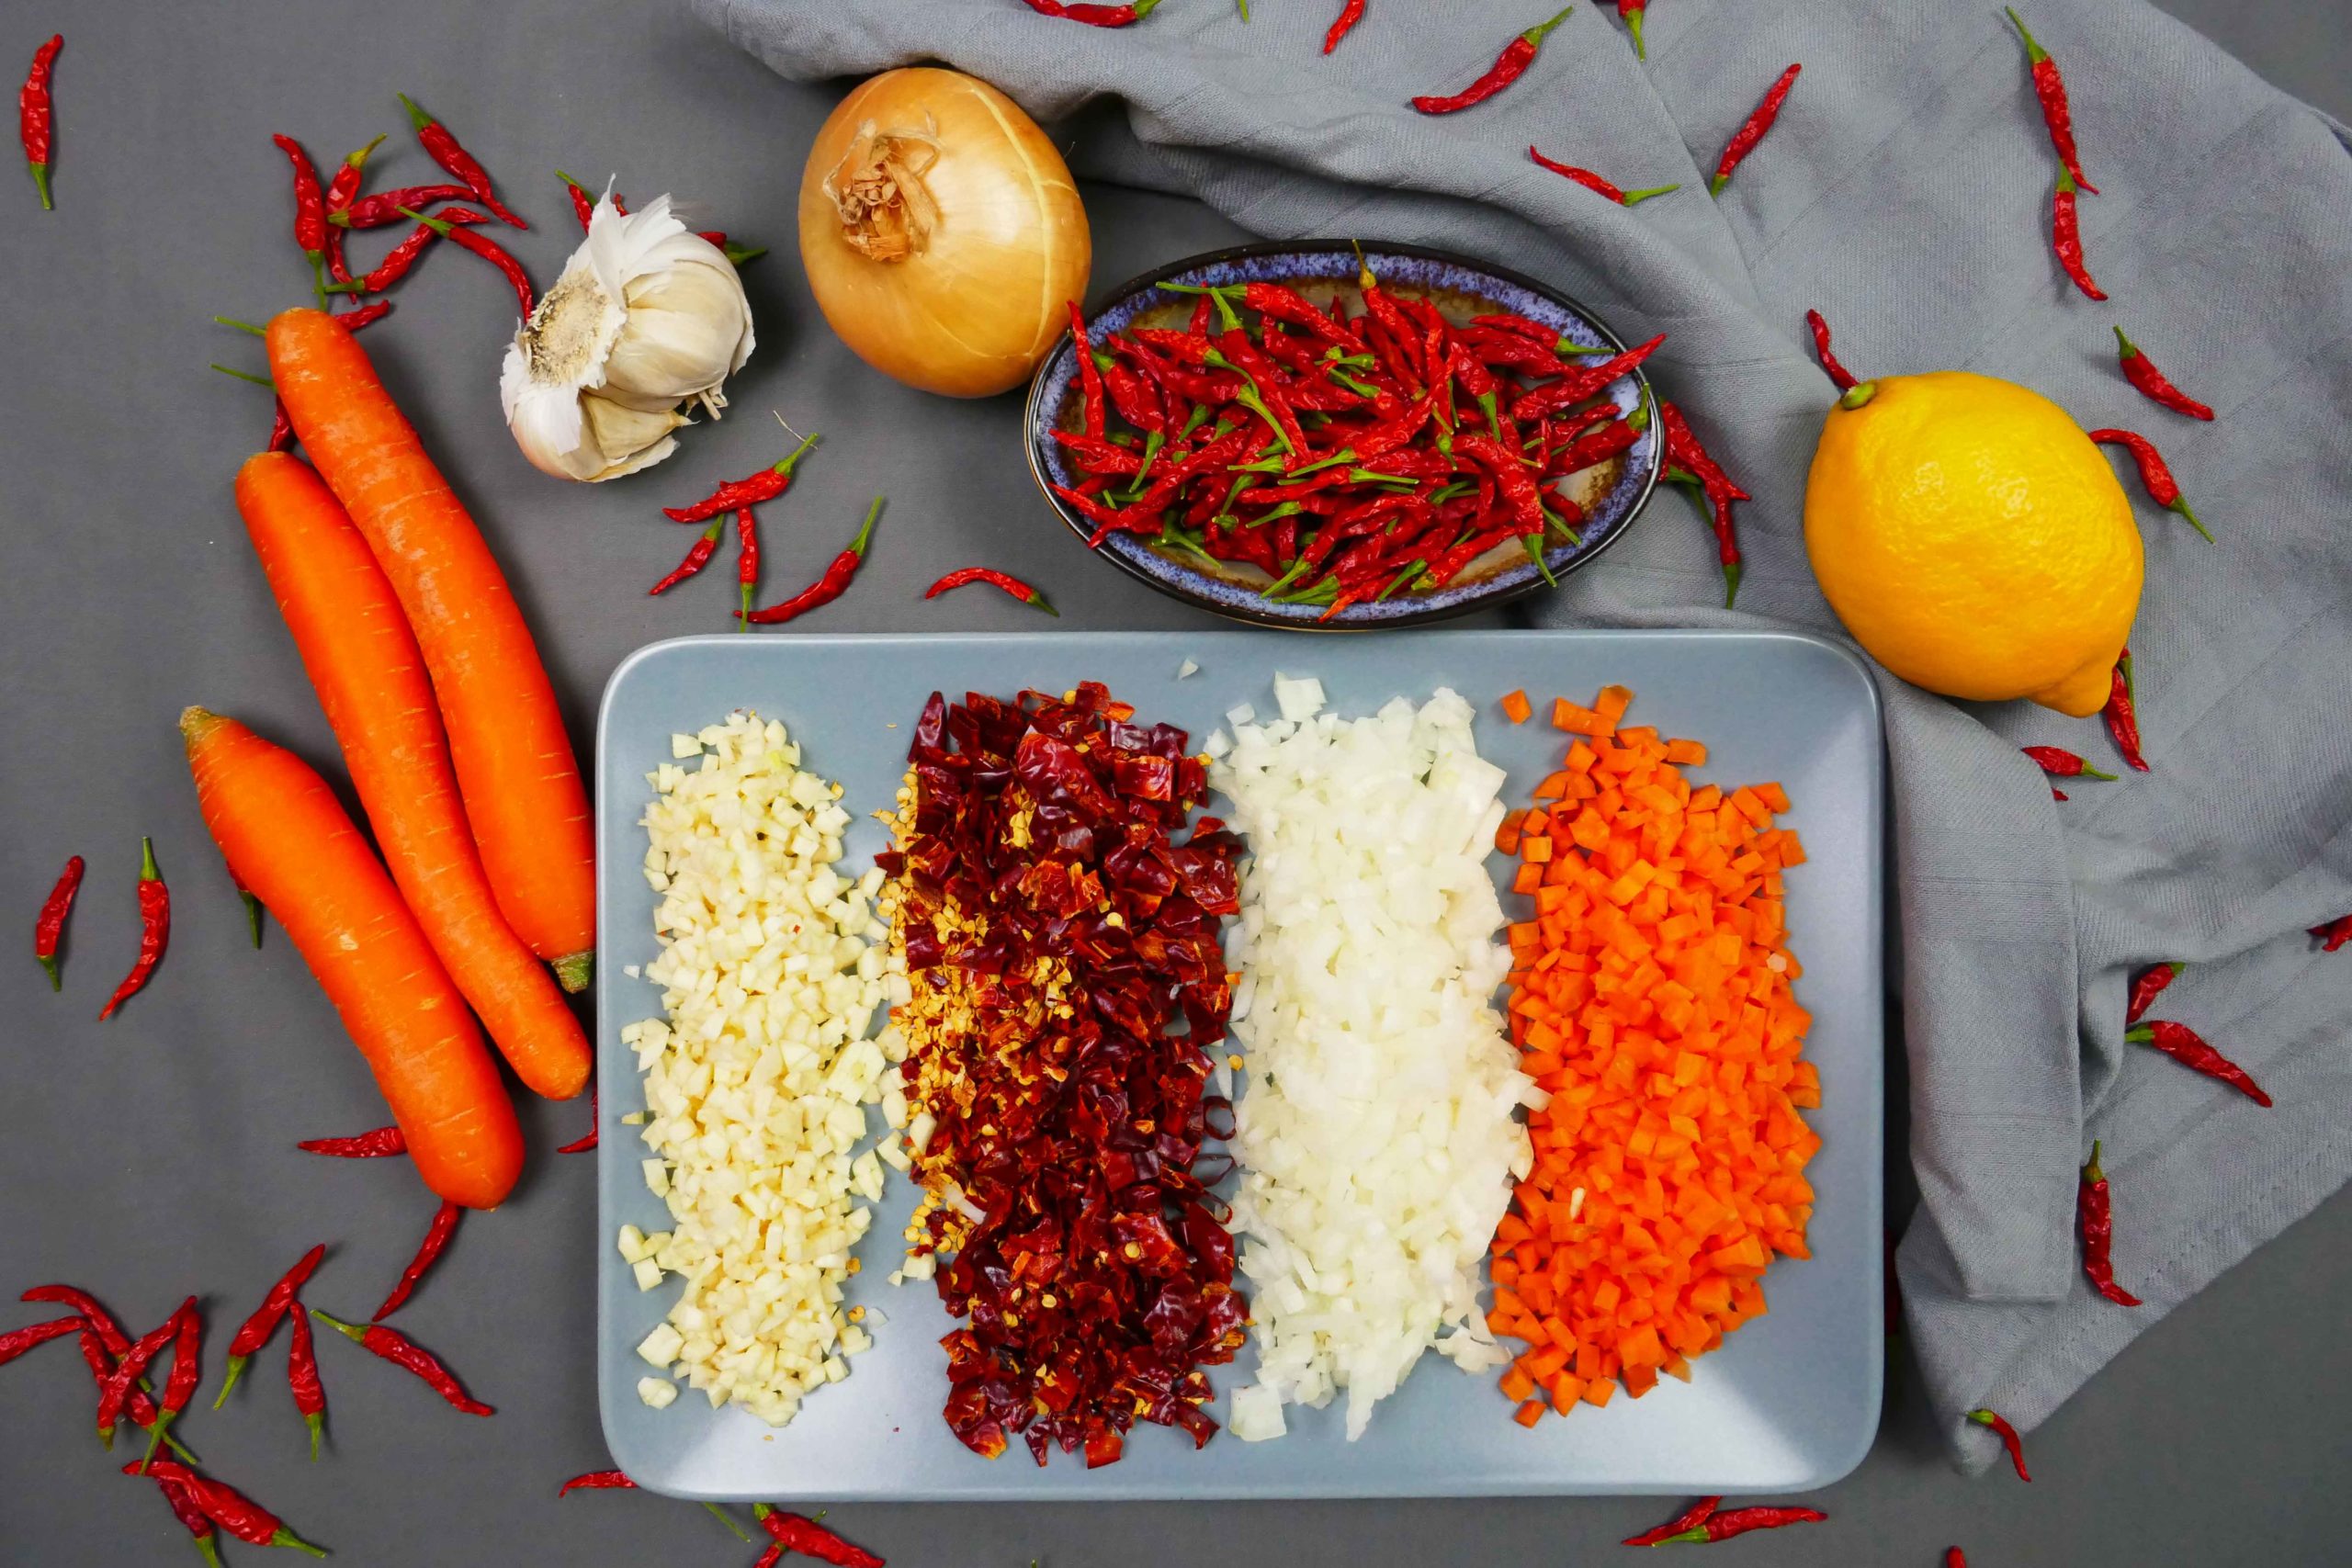 Geschnittene Zutaten für die vegane Tom Yam Chili Paste, Knoblauch, Chilischoten, Zwiebeln, Karotten, Zitrone